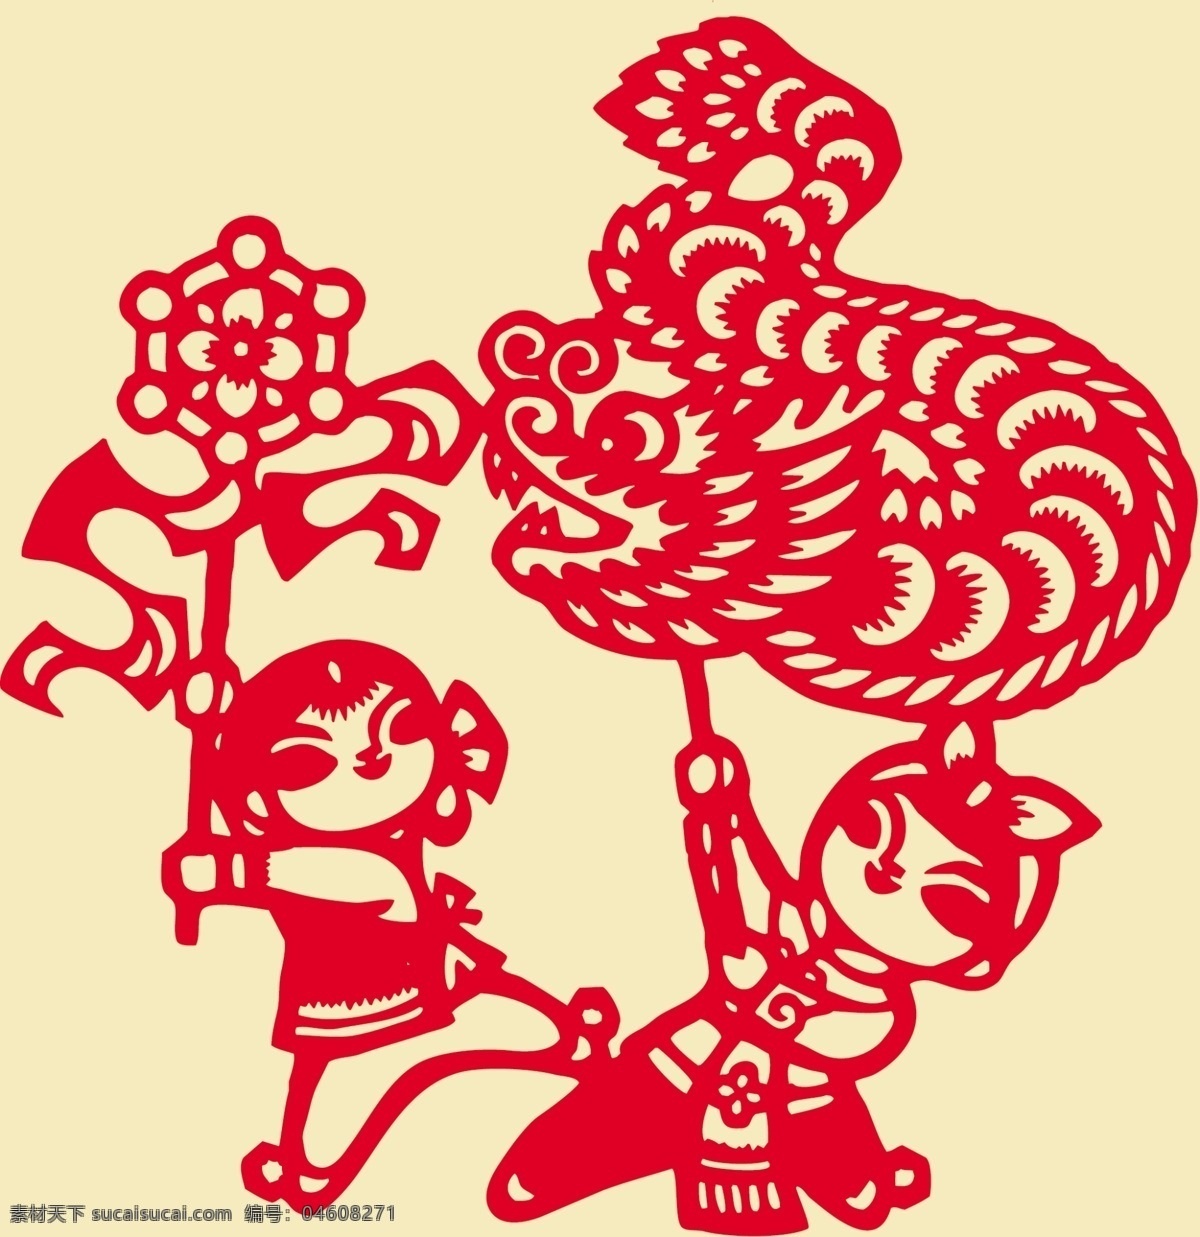 民俗文化 舞龙 剪纸 纹样 民俗 文化 绣球 舞蹈 汉族 传统剪纸 文化艺术 传统文化